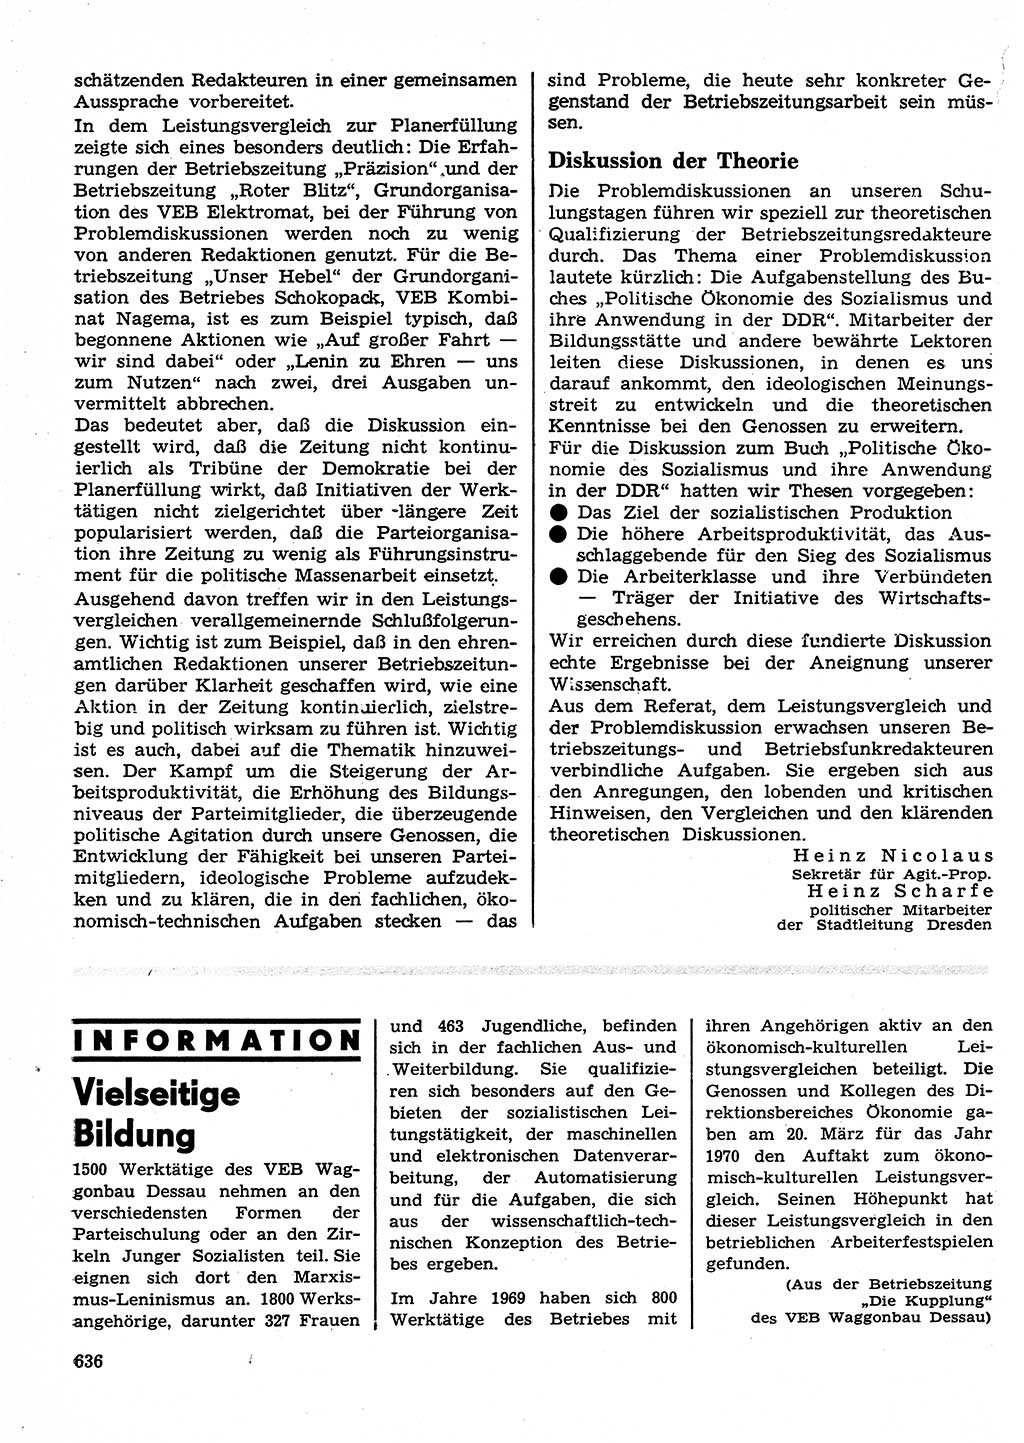 Neuer Weg (NW), Organ des Zentralkomitees (ZK) der SED (Sozialistische Einheitspartei Deutschlands) für Fragen des Parteilebens, 25. Jahrgang [Deutsche Demokratische Republik (DDR)] 1970, Seite 636 (NW ZK SED DDR 1970, S. 636)